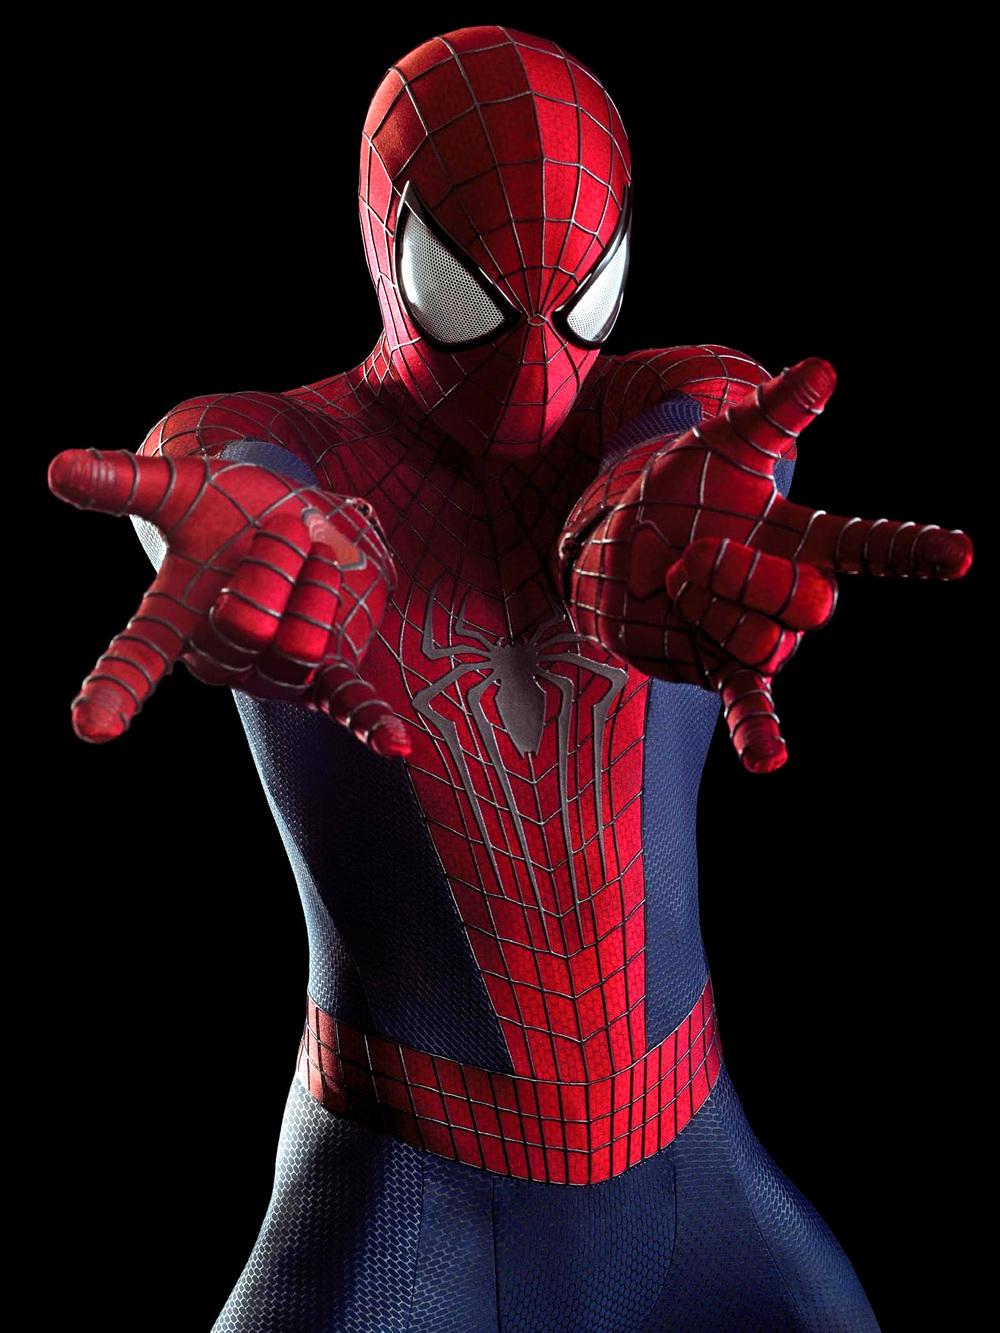 the amazing spiderman 2